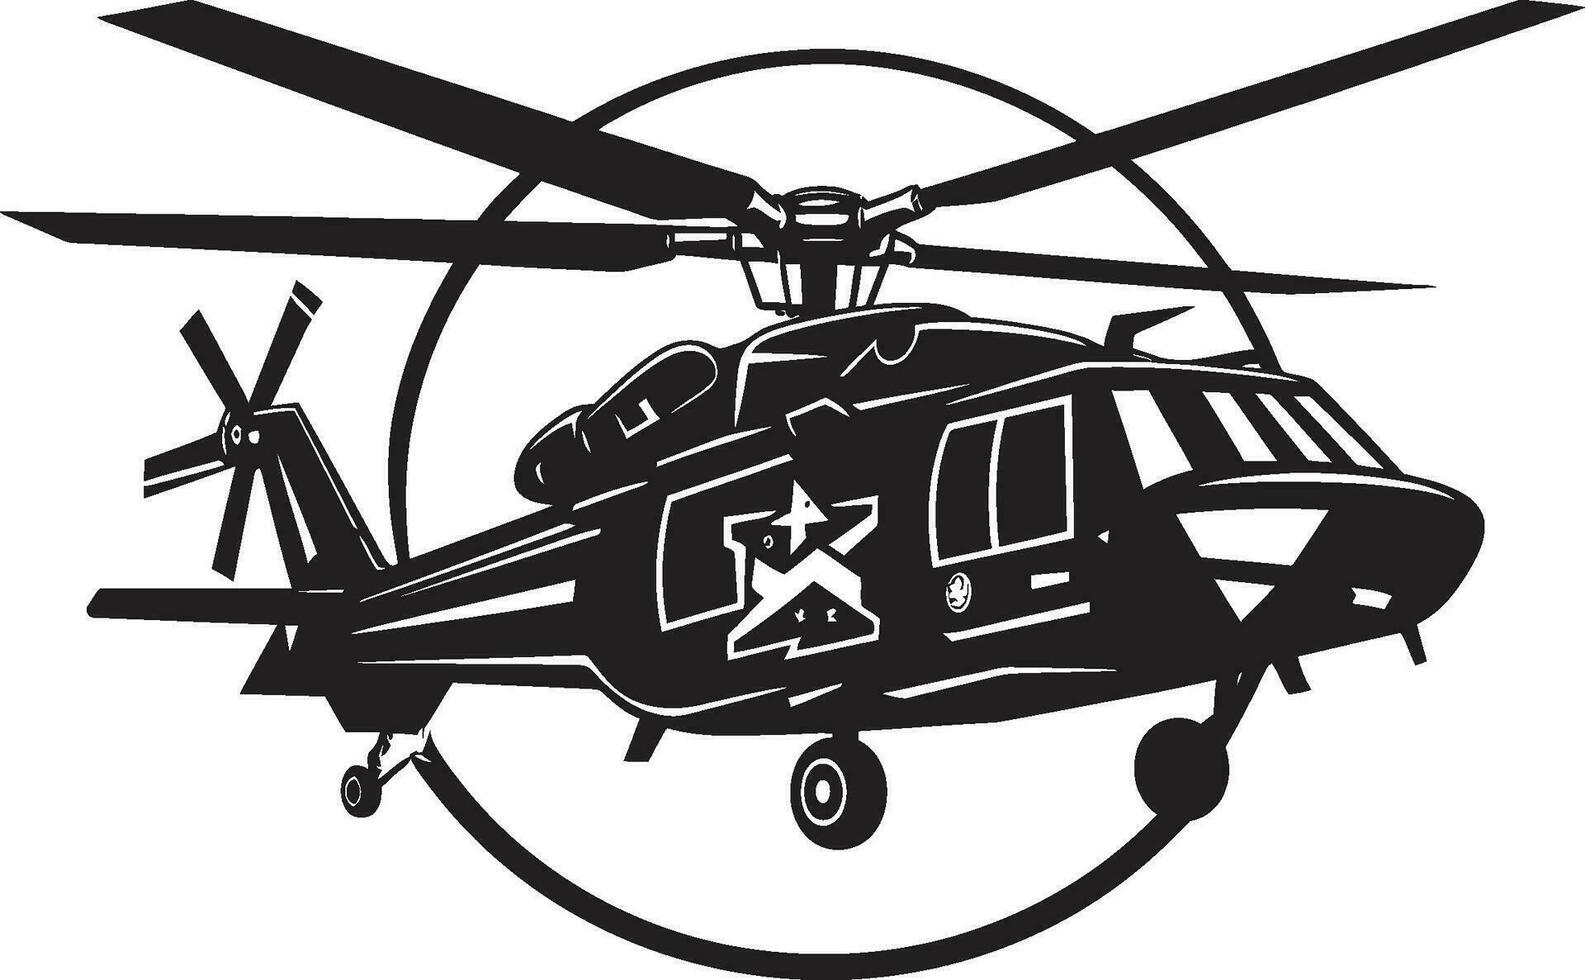 taktisk rotorcraft svart symbolisk design militant hej vektor armén chopper symbol